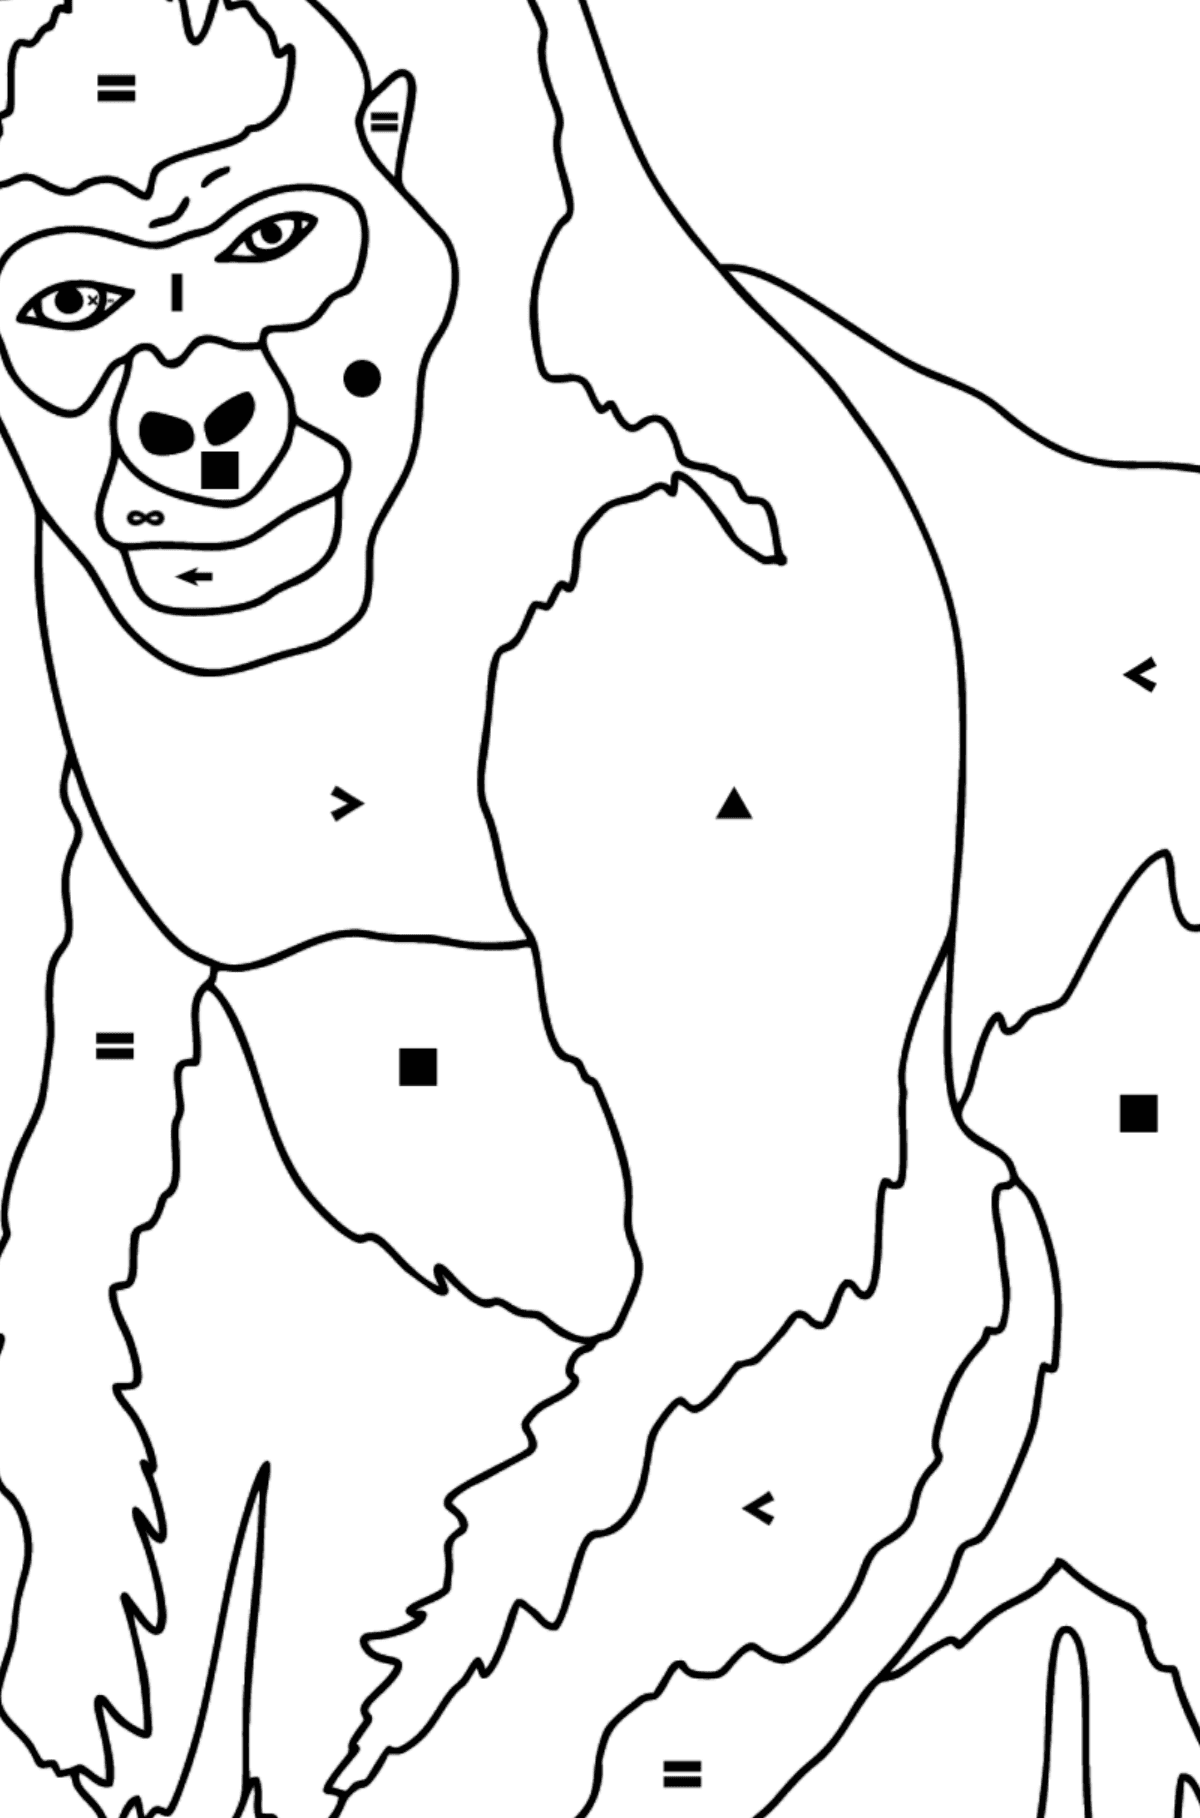 Kleurplaat gorilla (moeilijk) - Kleuren met symbolen voor kinderen